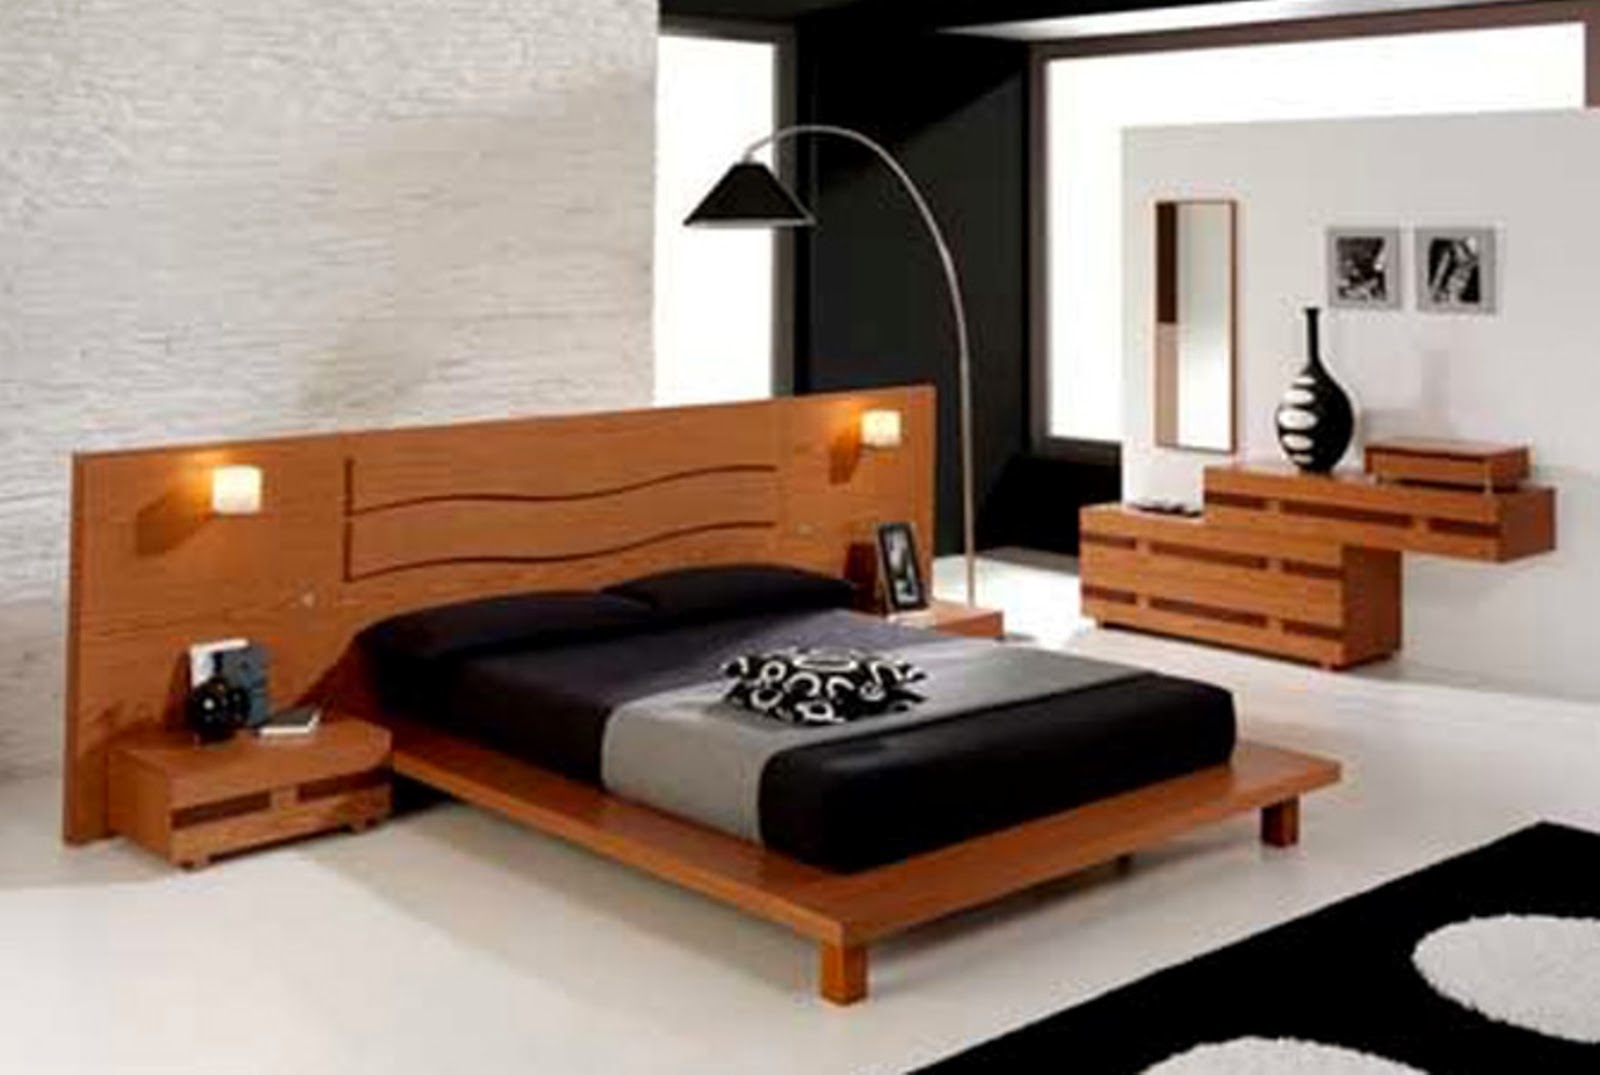 Desain Tempat Tidur Minimalis Dari Kayu | Gambar Desain ...